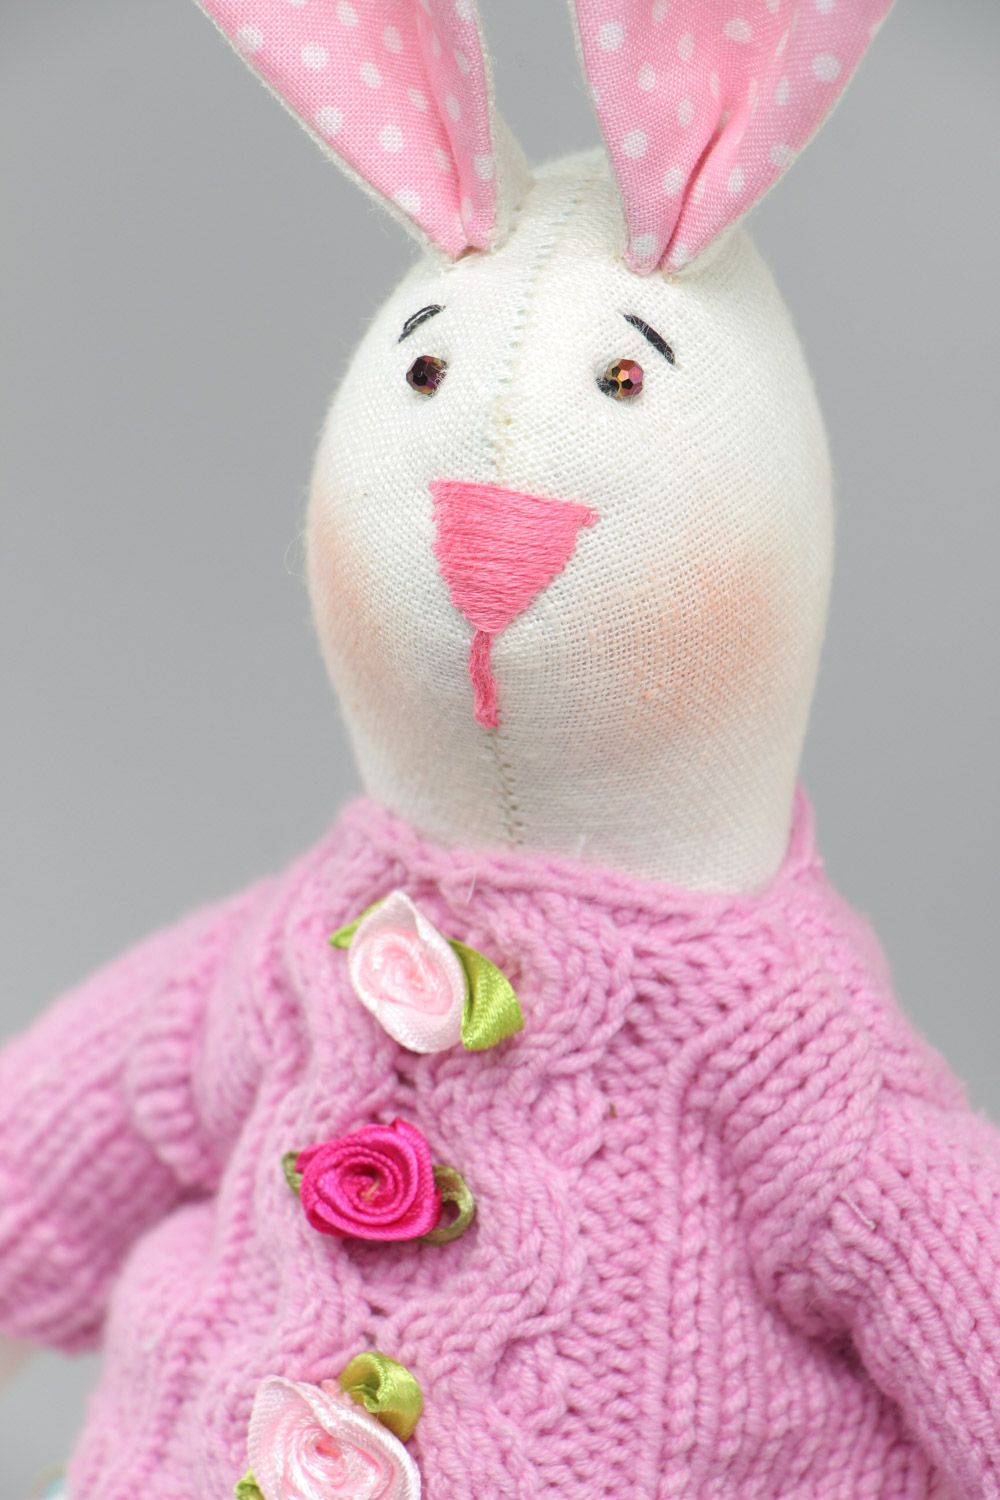 Textil Kuscheltier Hase im rosa Trägerkleid handmade für Kinder schön foto 3